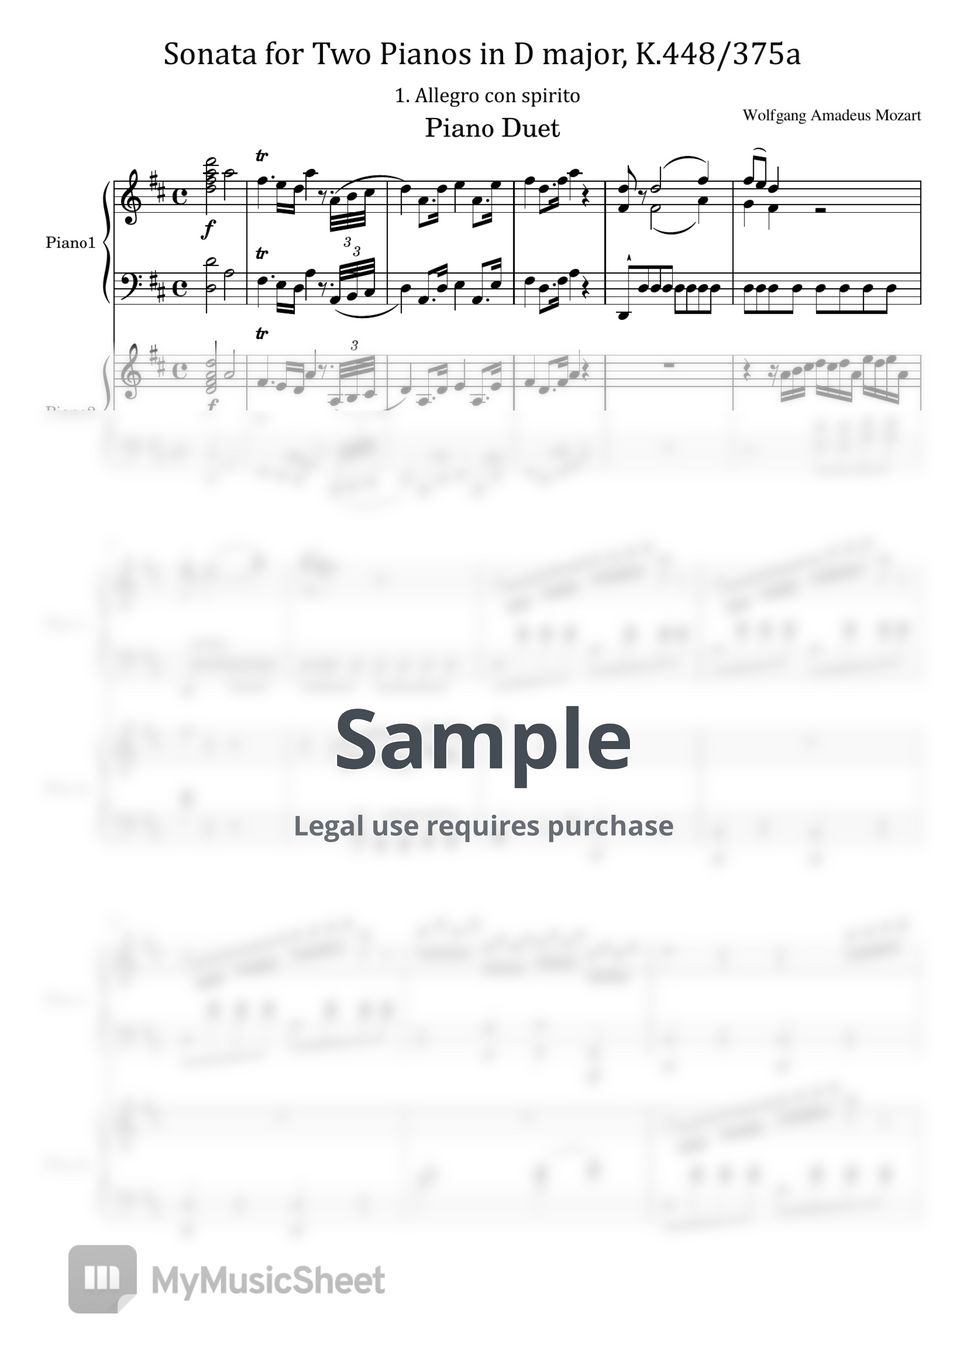 莫扎特 - Sonata for Two Pianos in D major, K.448/375a I. Allegro (Original For Piano Duo Score and Parts) by poon